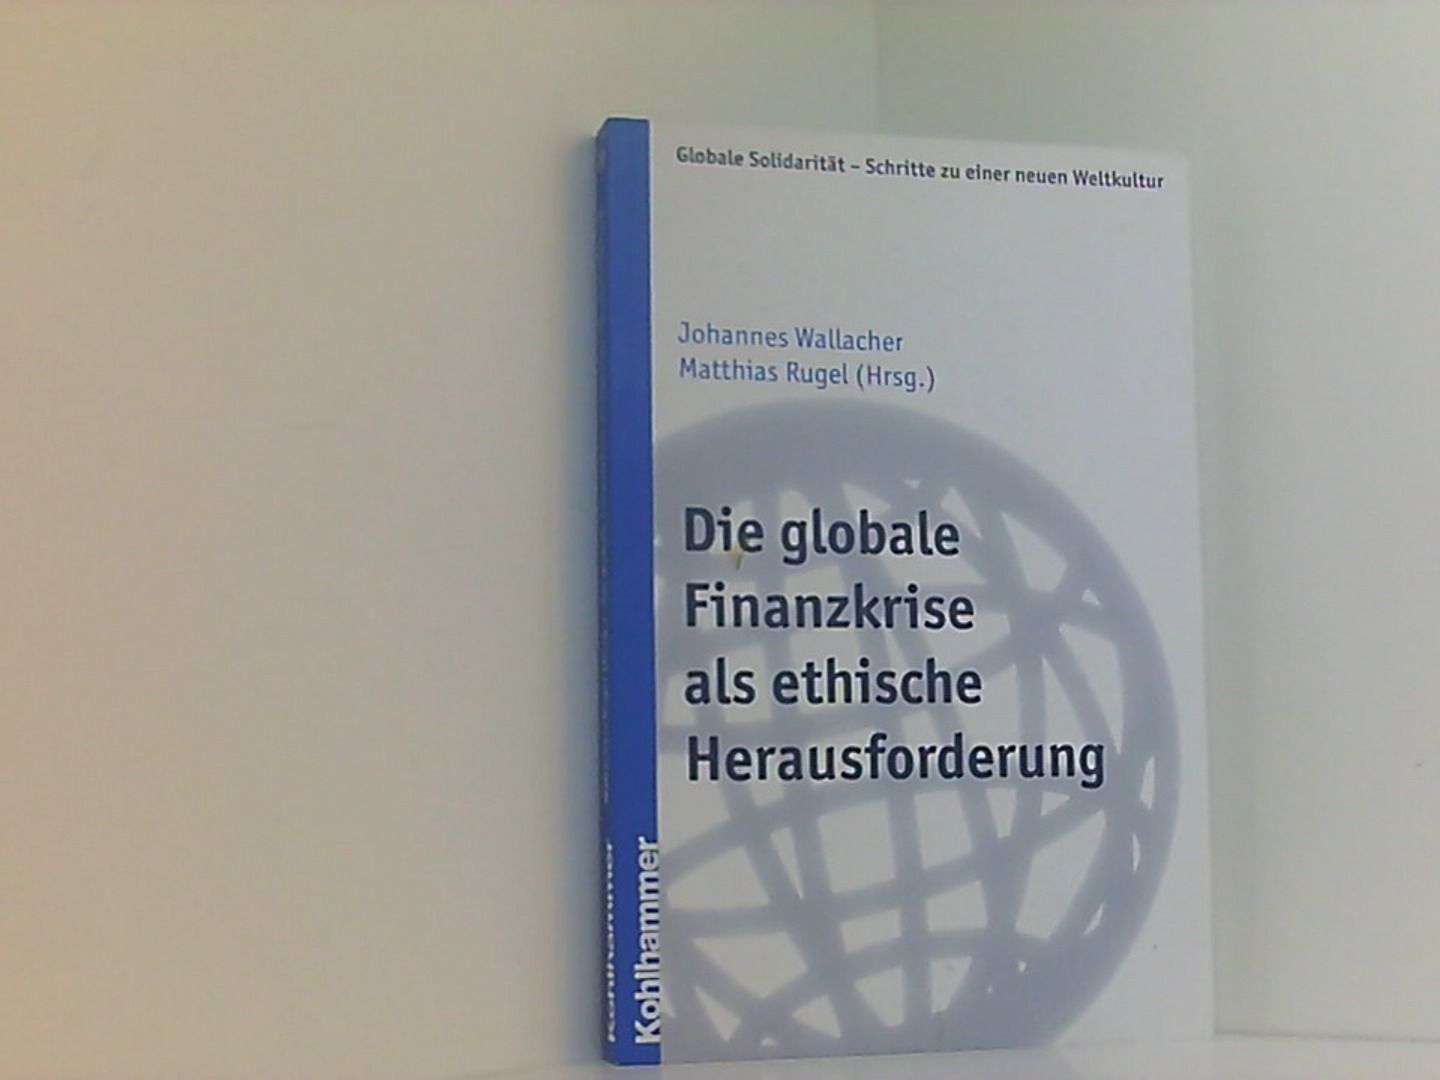 Die globale Finanzkrise als ethische Herausforderung (Globale Solidarität - Schritte zu einer neuen Weltkultur, Band 20) - Wallacher, Johannes und Matthias Rugel